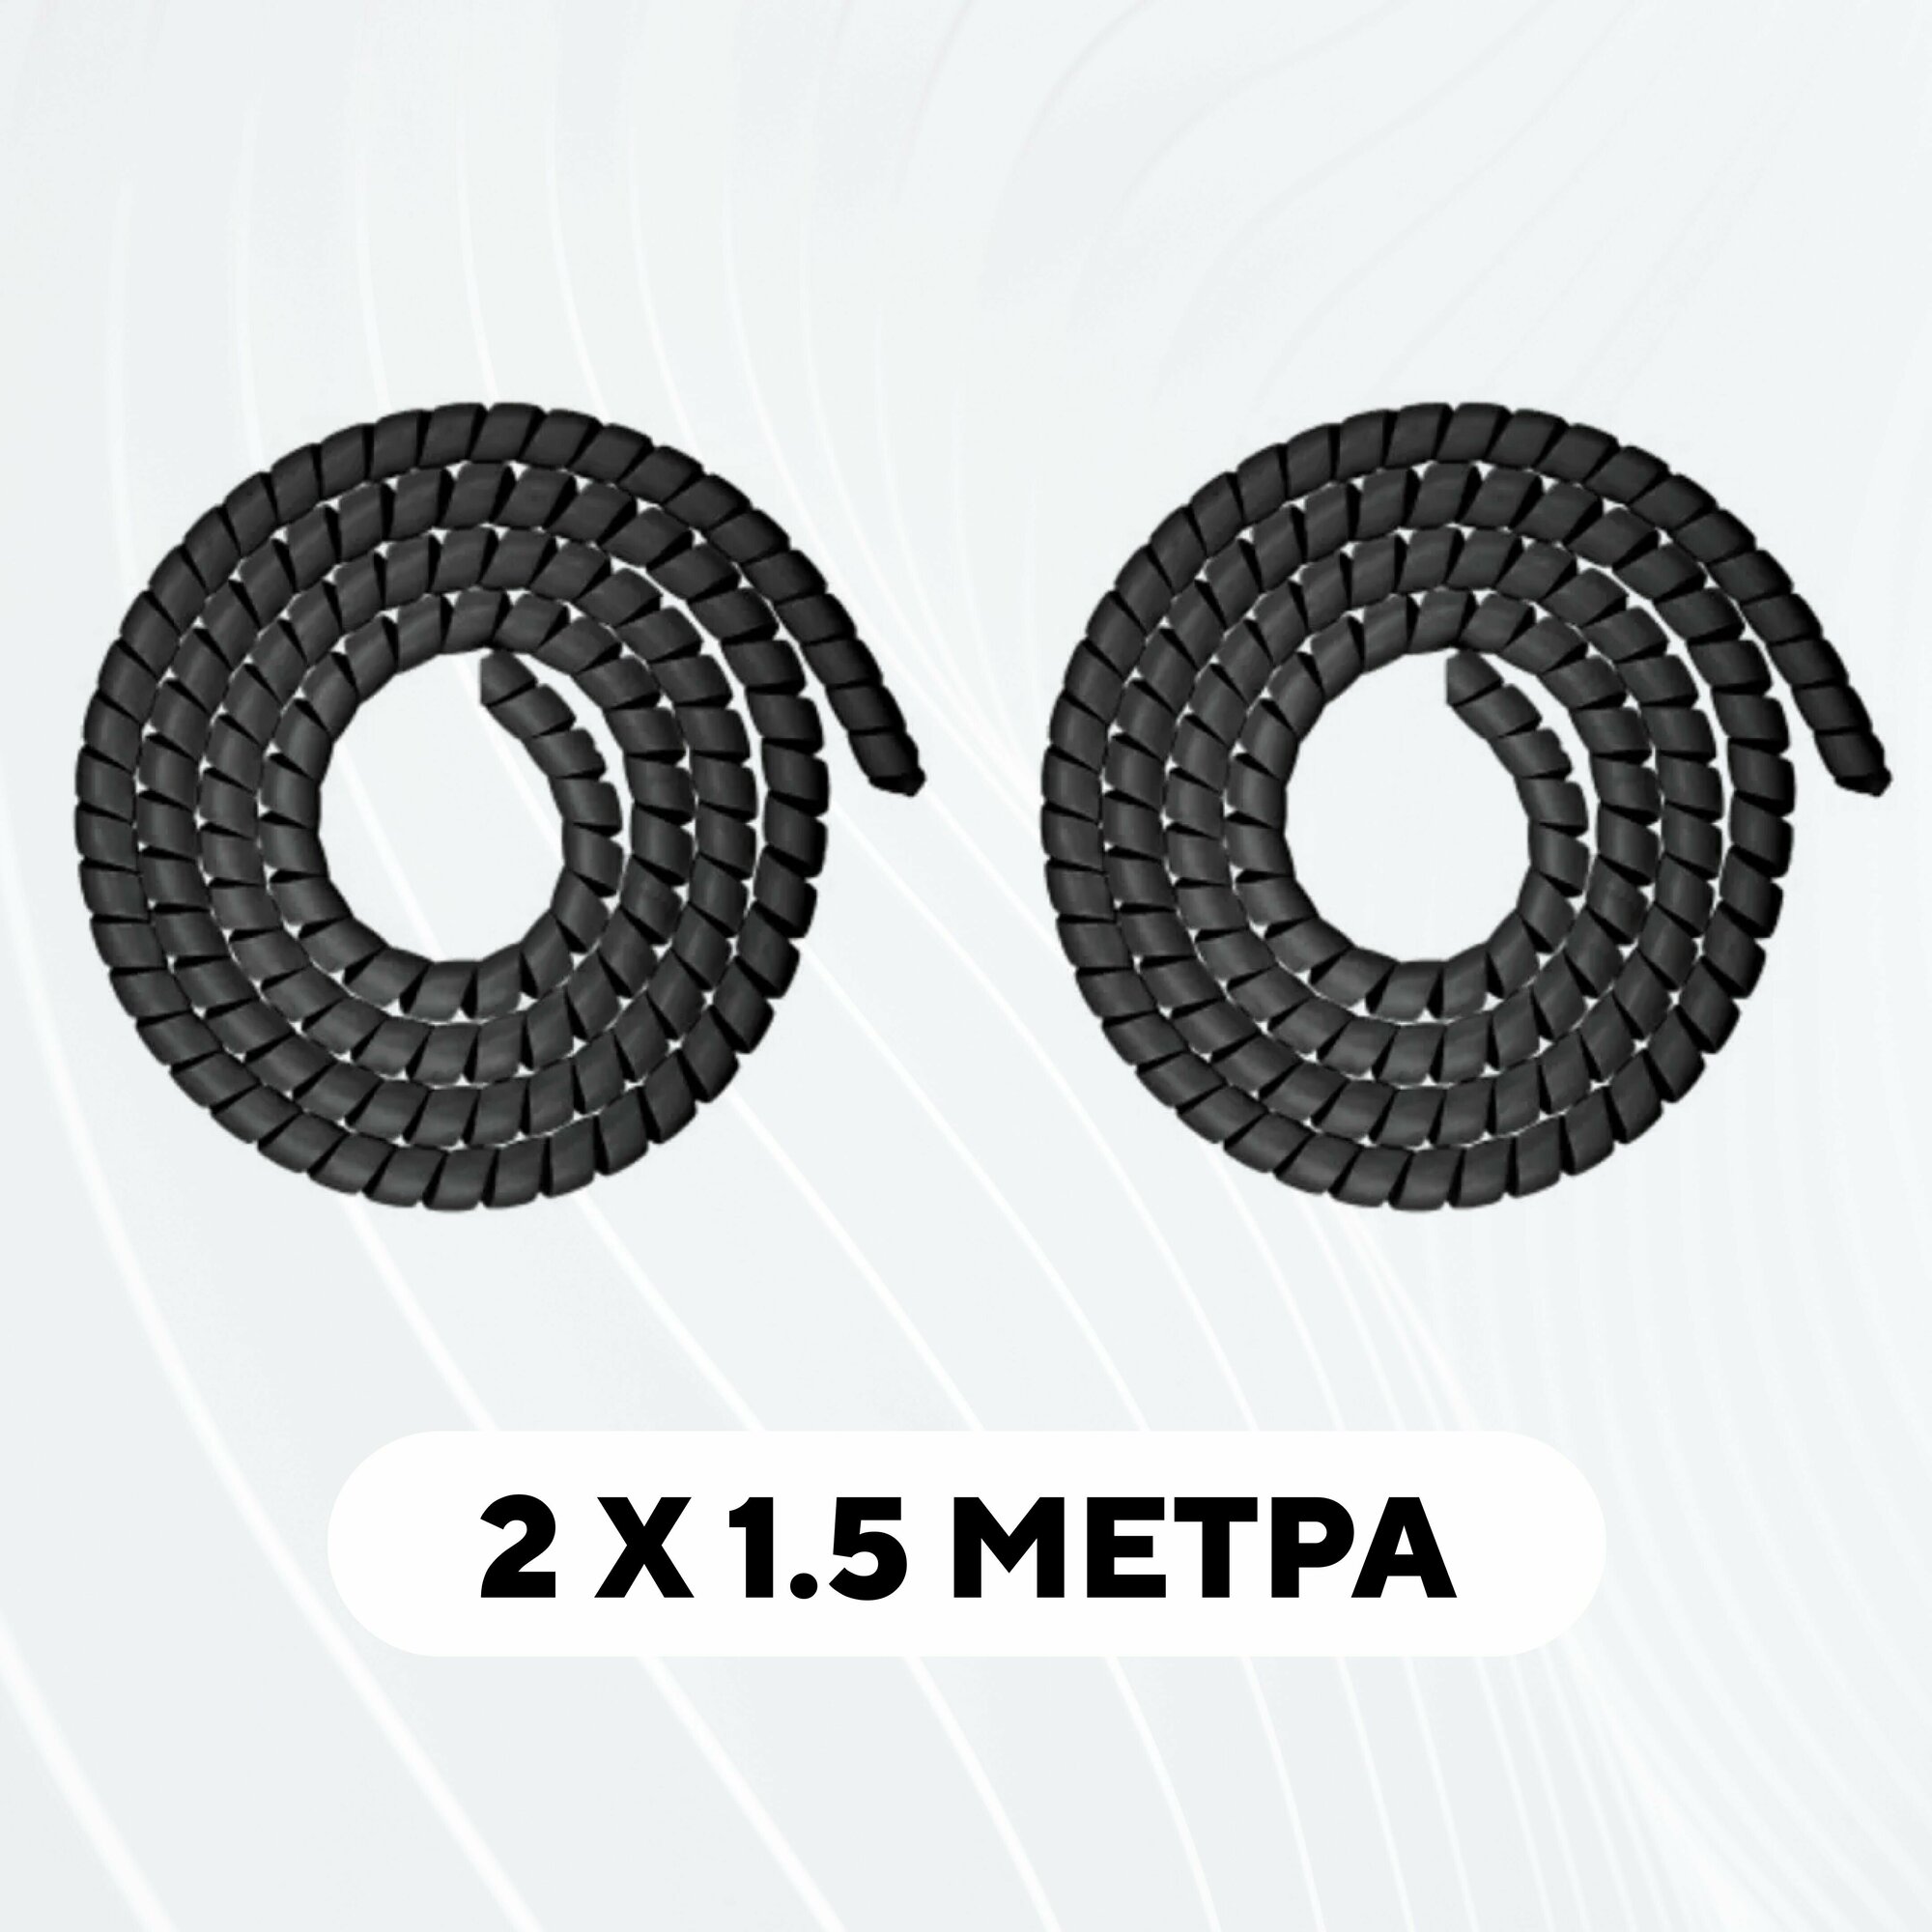 Спиральная обмотка проводки, оплетка для проводов (черный, комплект 2 шт. по 1.5 метра)